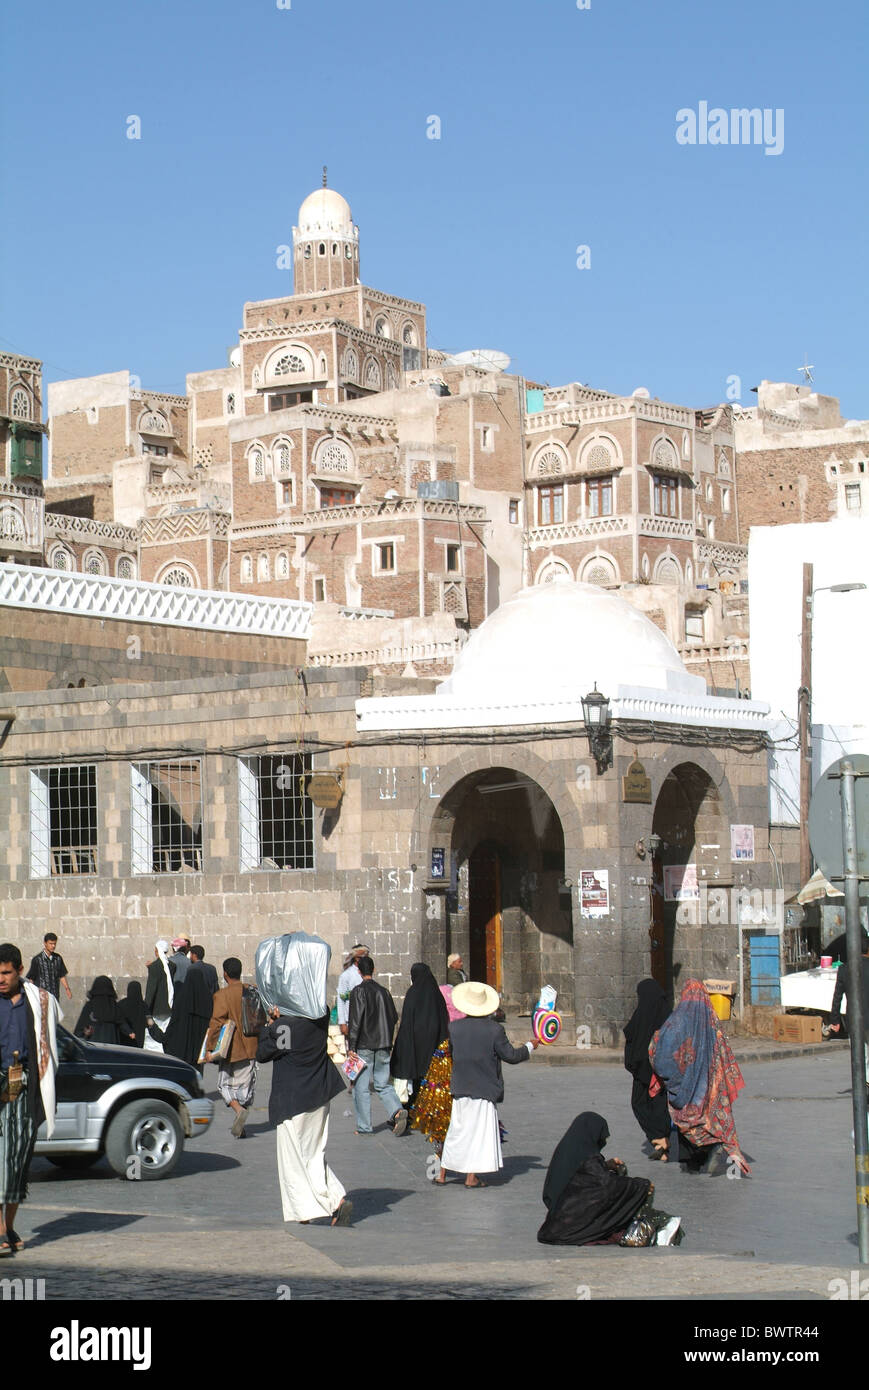 Yemen Sana'a Sanaa Old San'un'architettura città vecchia città del patrimonio mondiale UNESCO Arabian arabo Arab t.r.a. Foto Stock